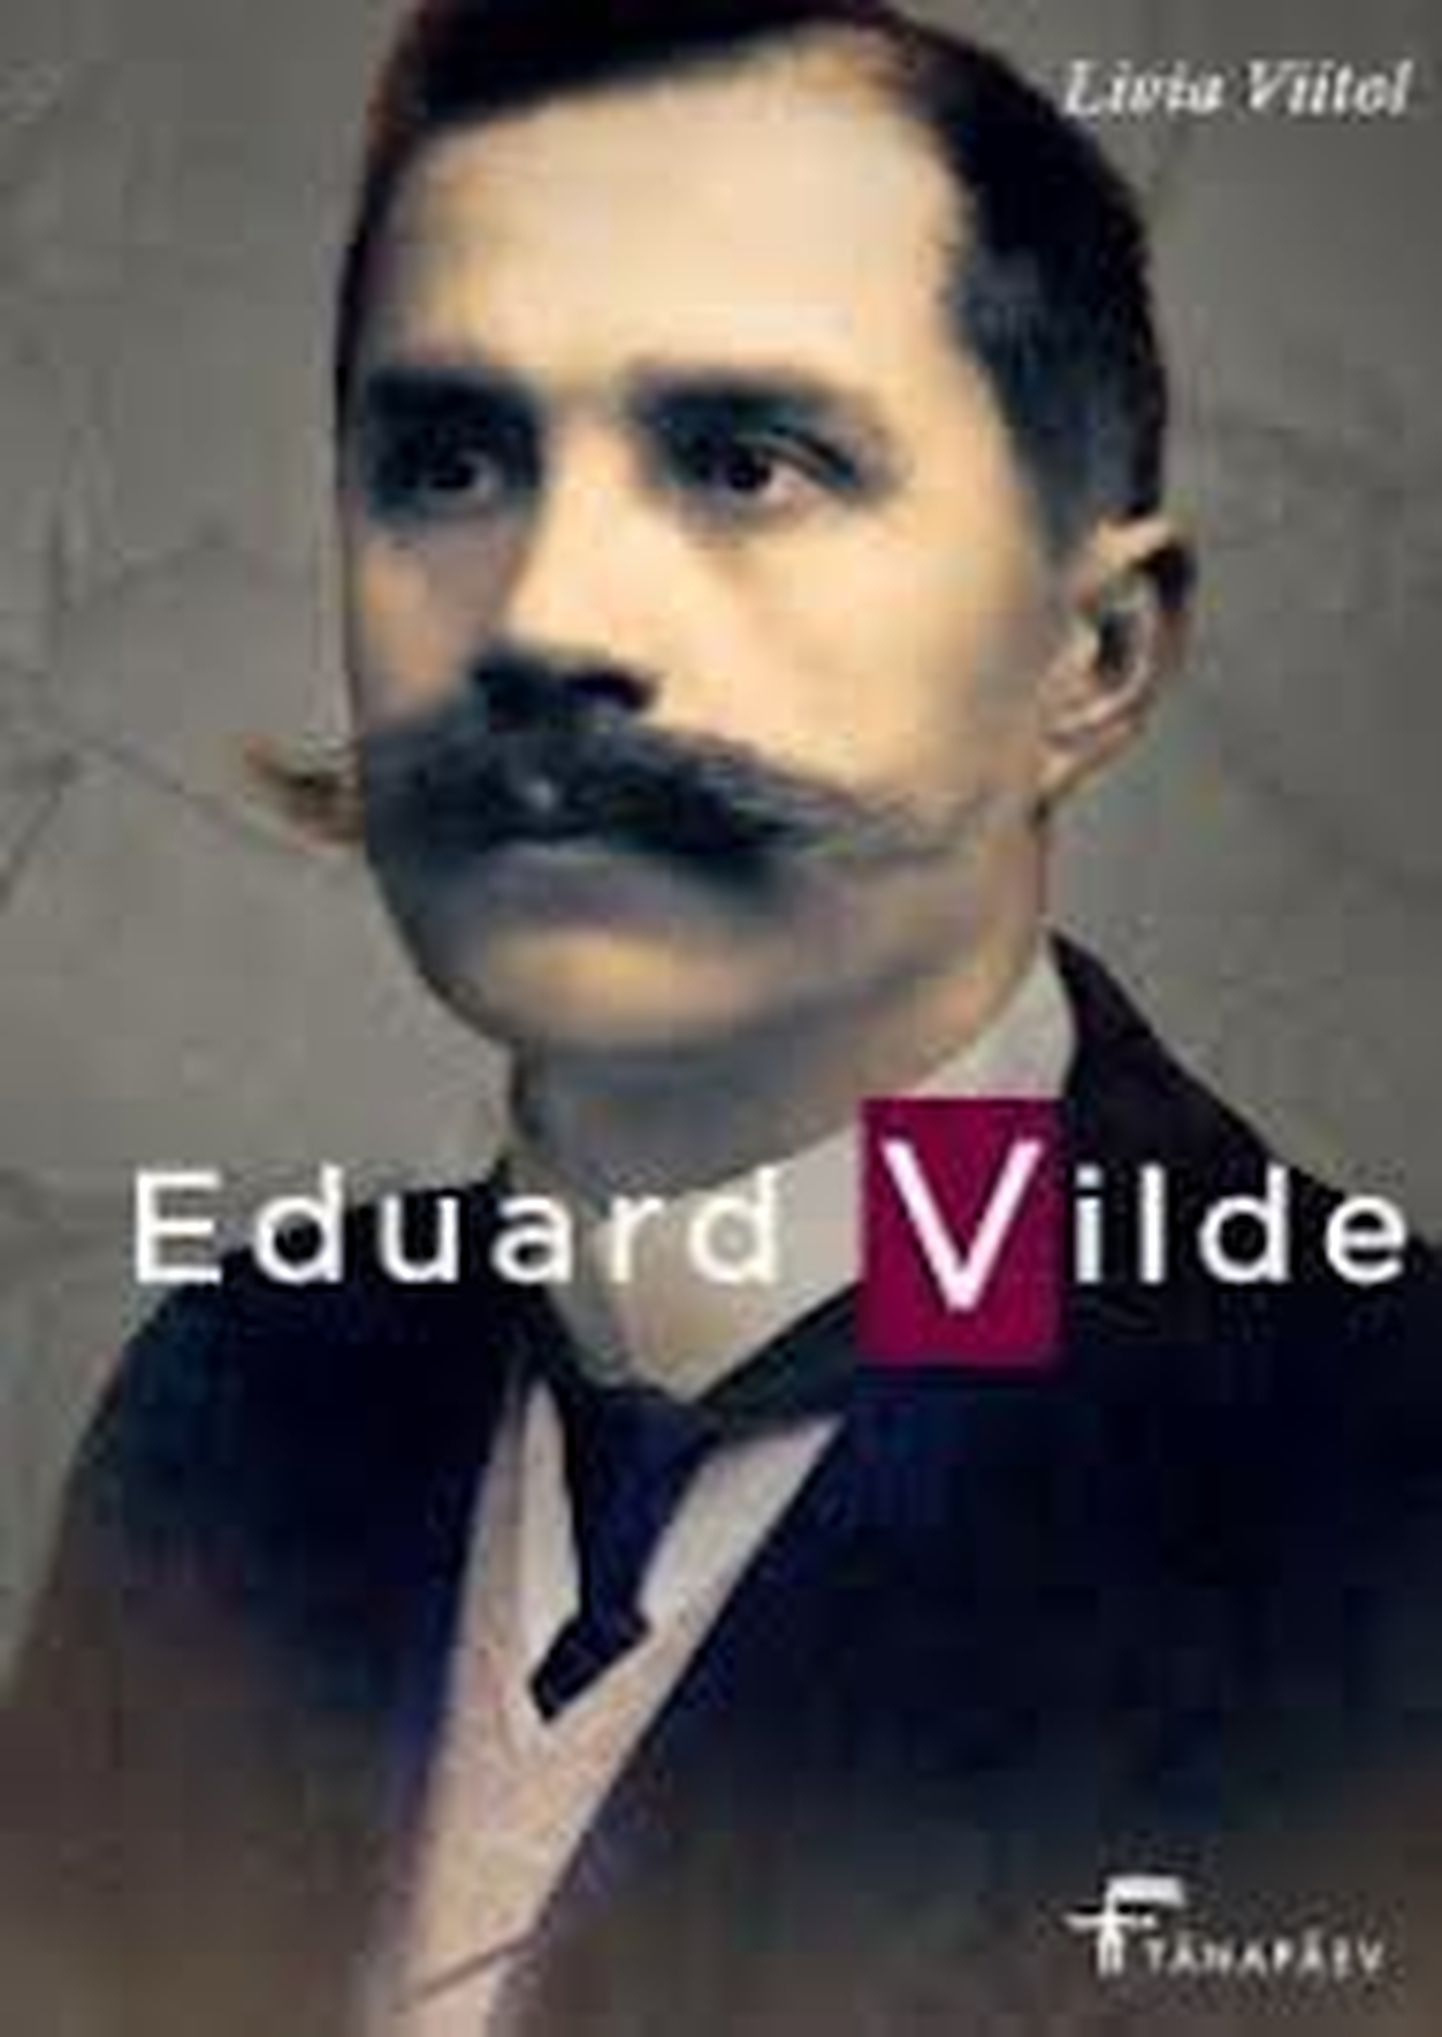 Livia Viitol "Eduard Vilde".